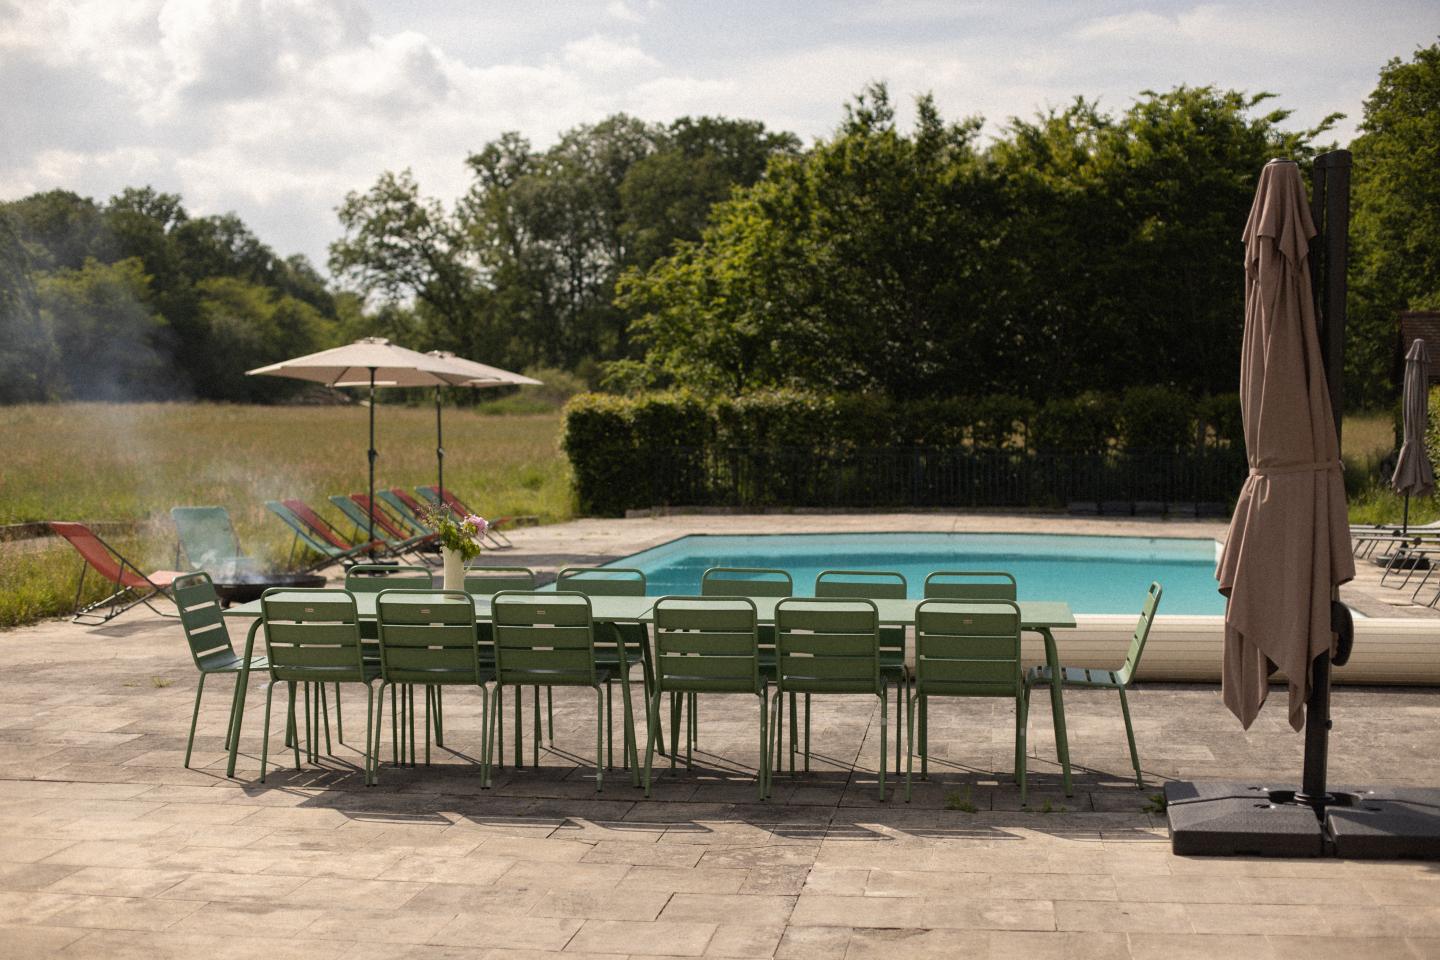 Hôte GreenGo: Location maison 15 personnes avec piscine à 50 min de Paris - Image 50